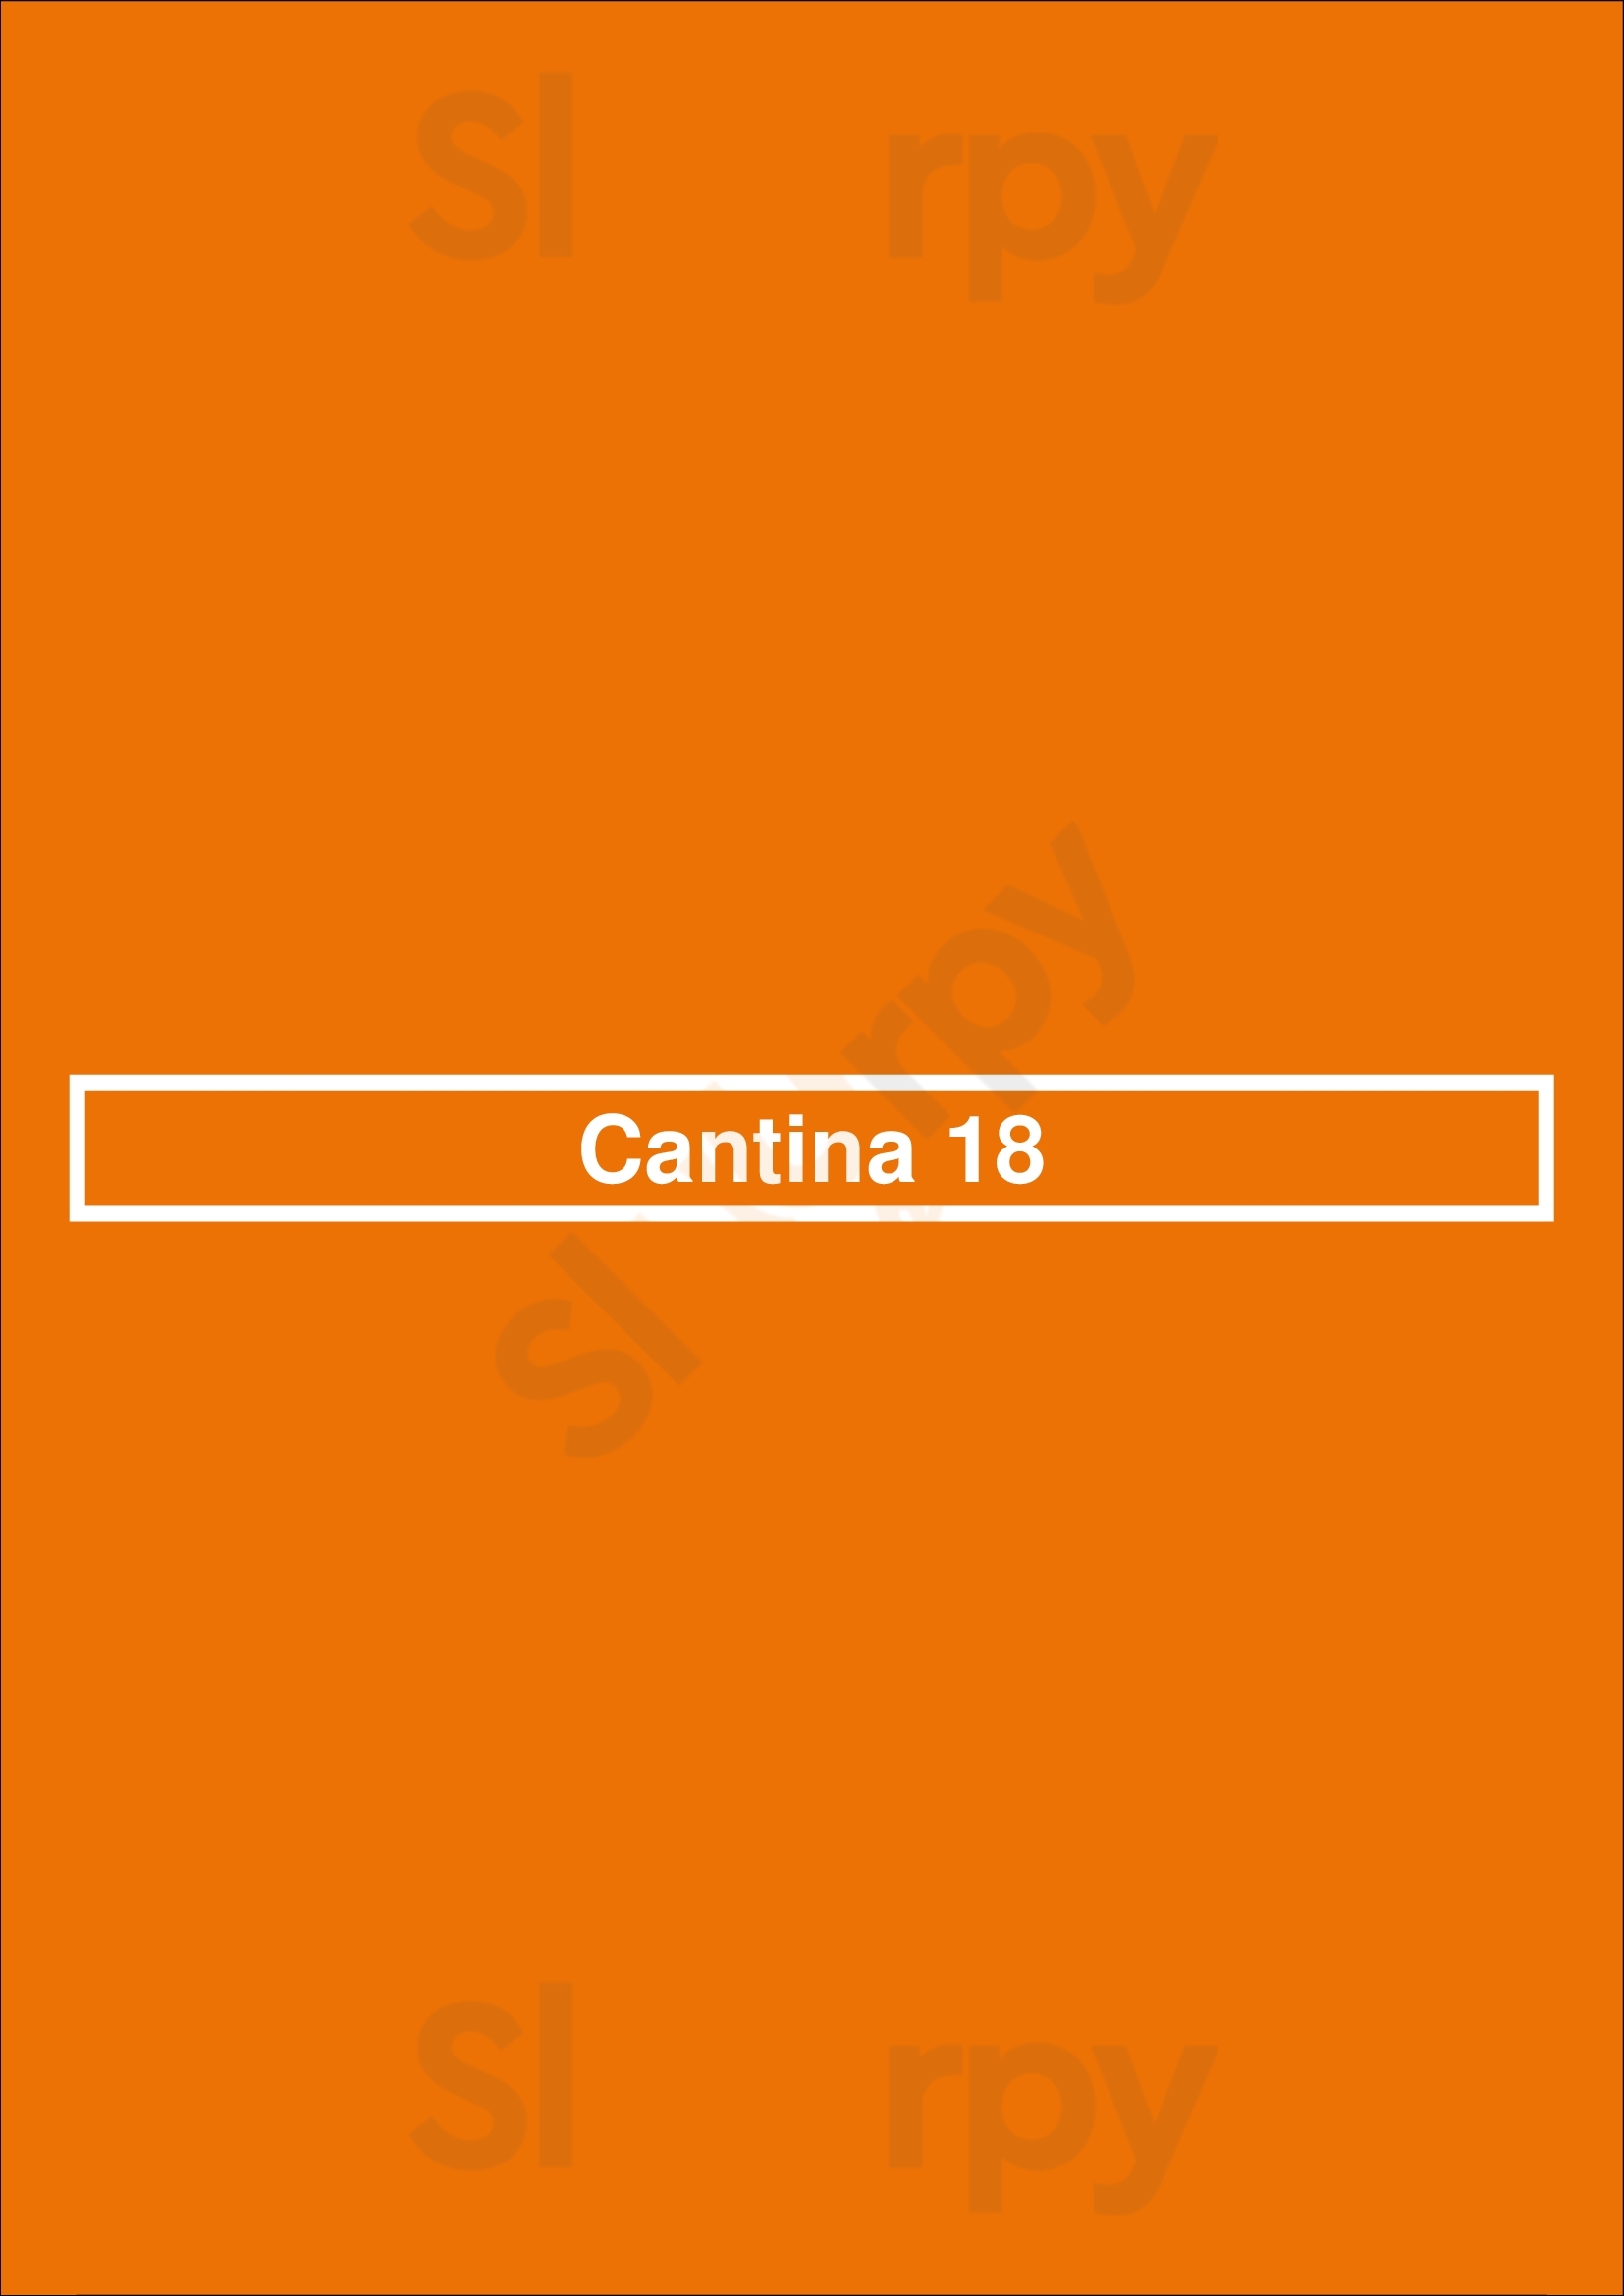 Cantina 18- Cameron Village Raleigh Menu - 1